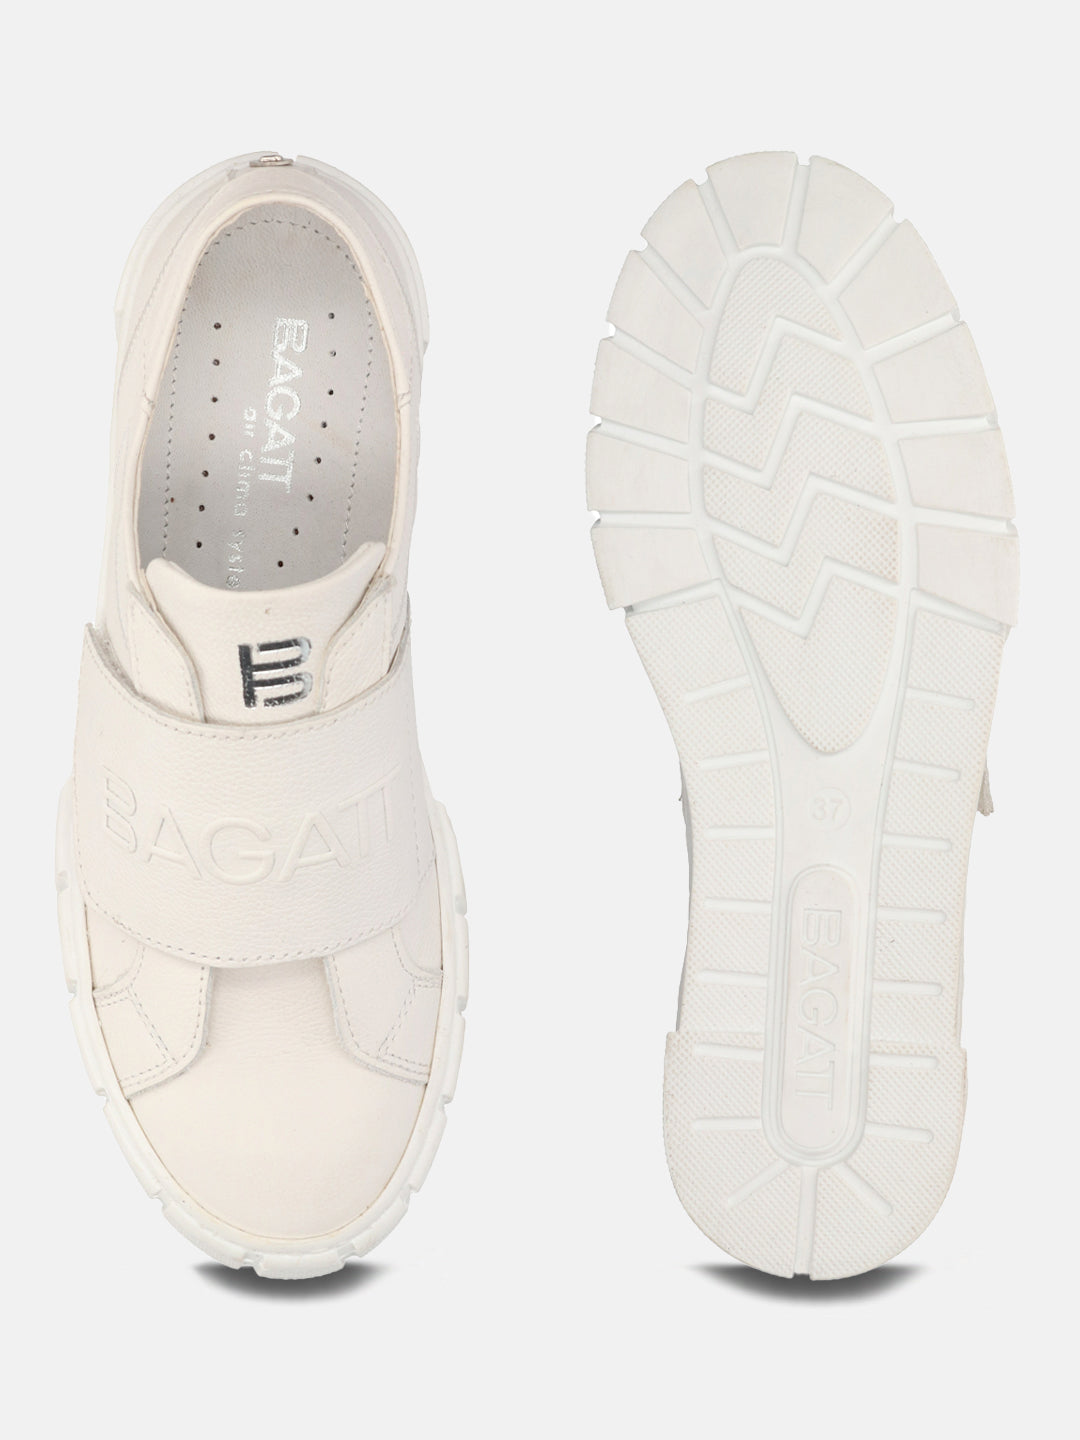 Tia White Sneakers - BAGATT